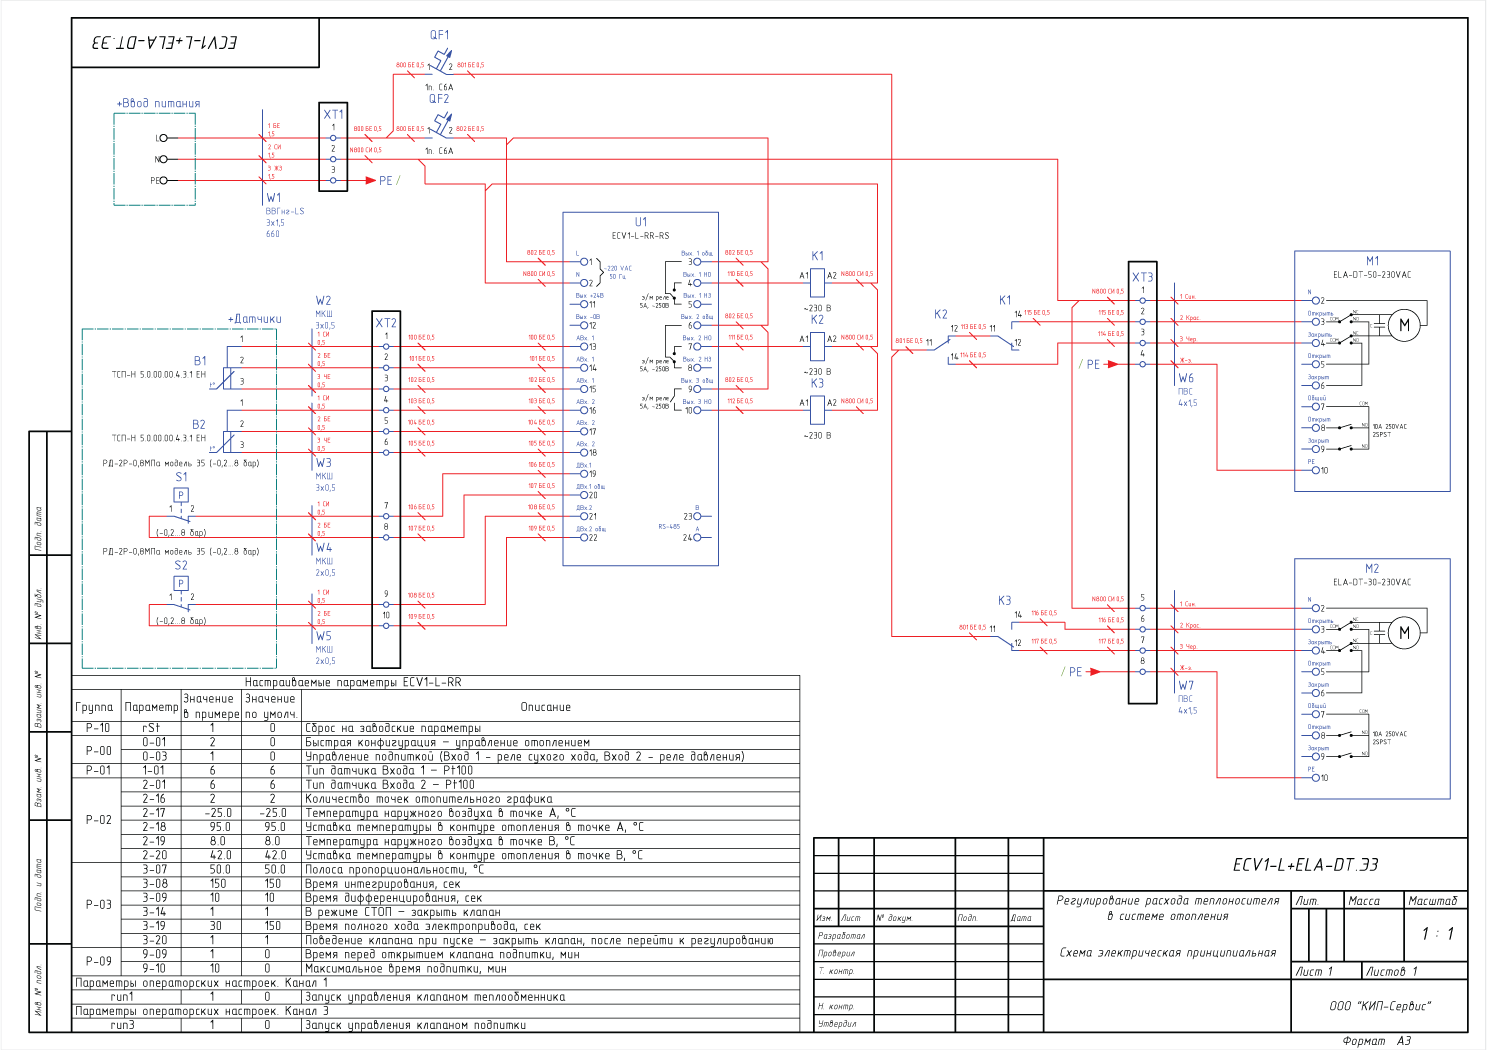 Пример схемы подключения электроприводов VALMA в системе отопления